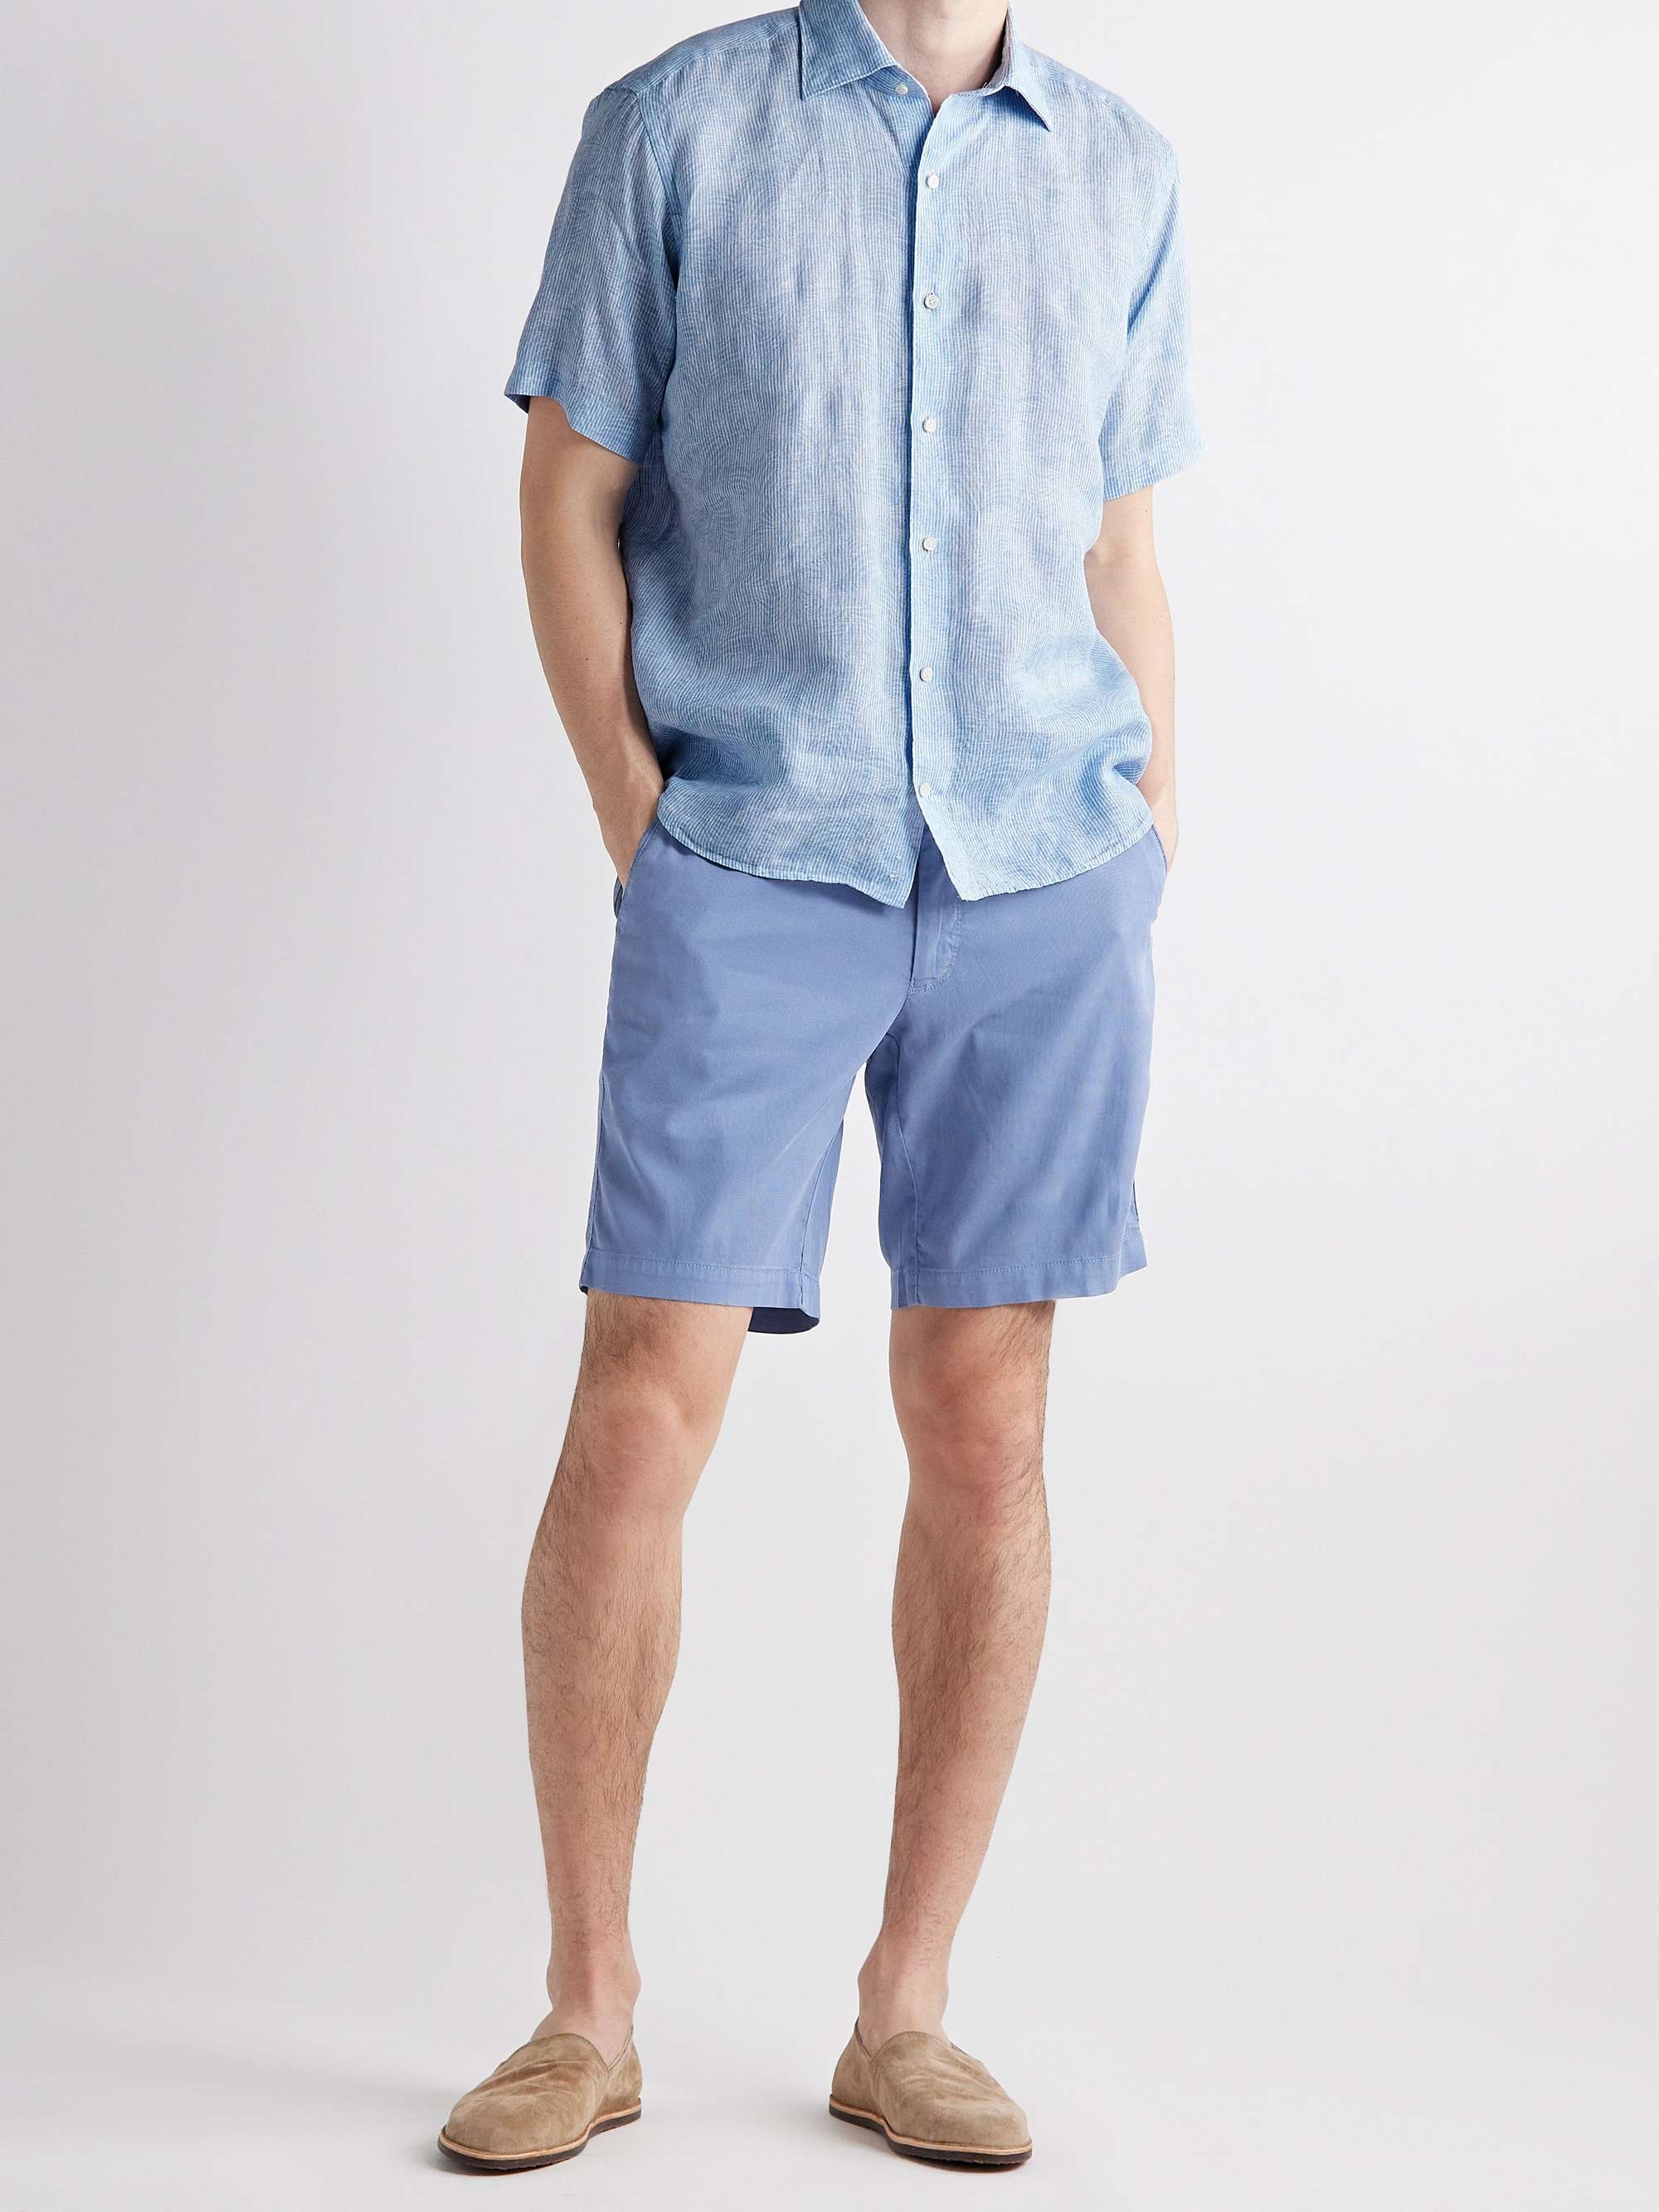 PETER MILLAR Bedford Slim-Fit Cotton-Blend Shorts for Men | MR PORTER